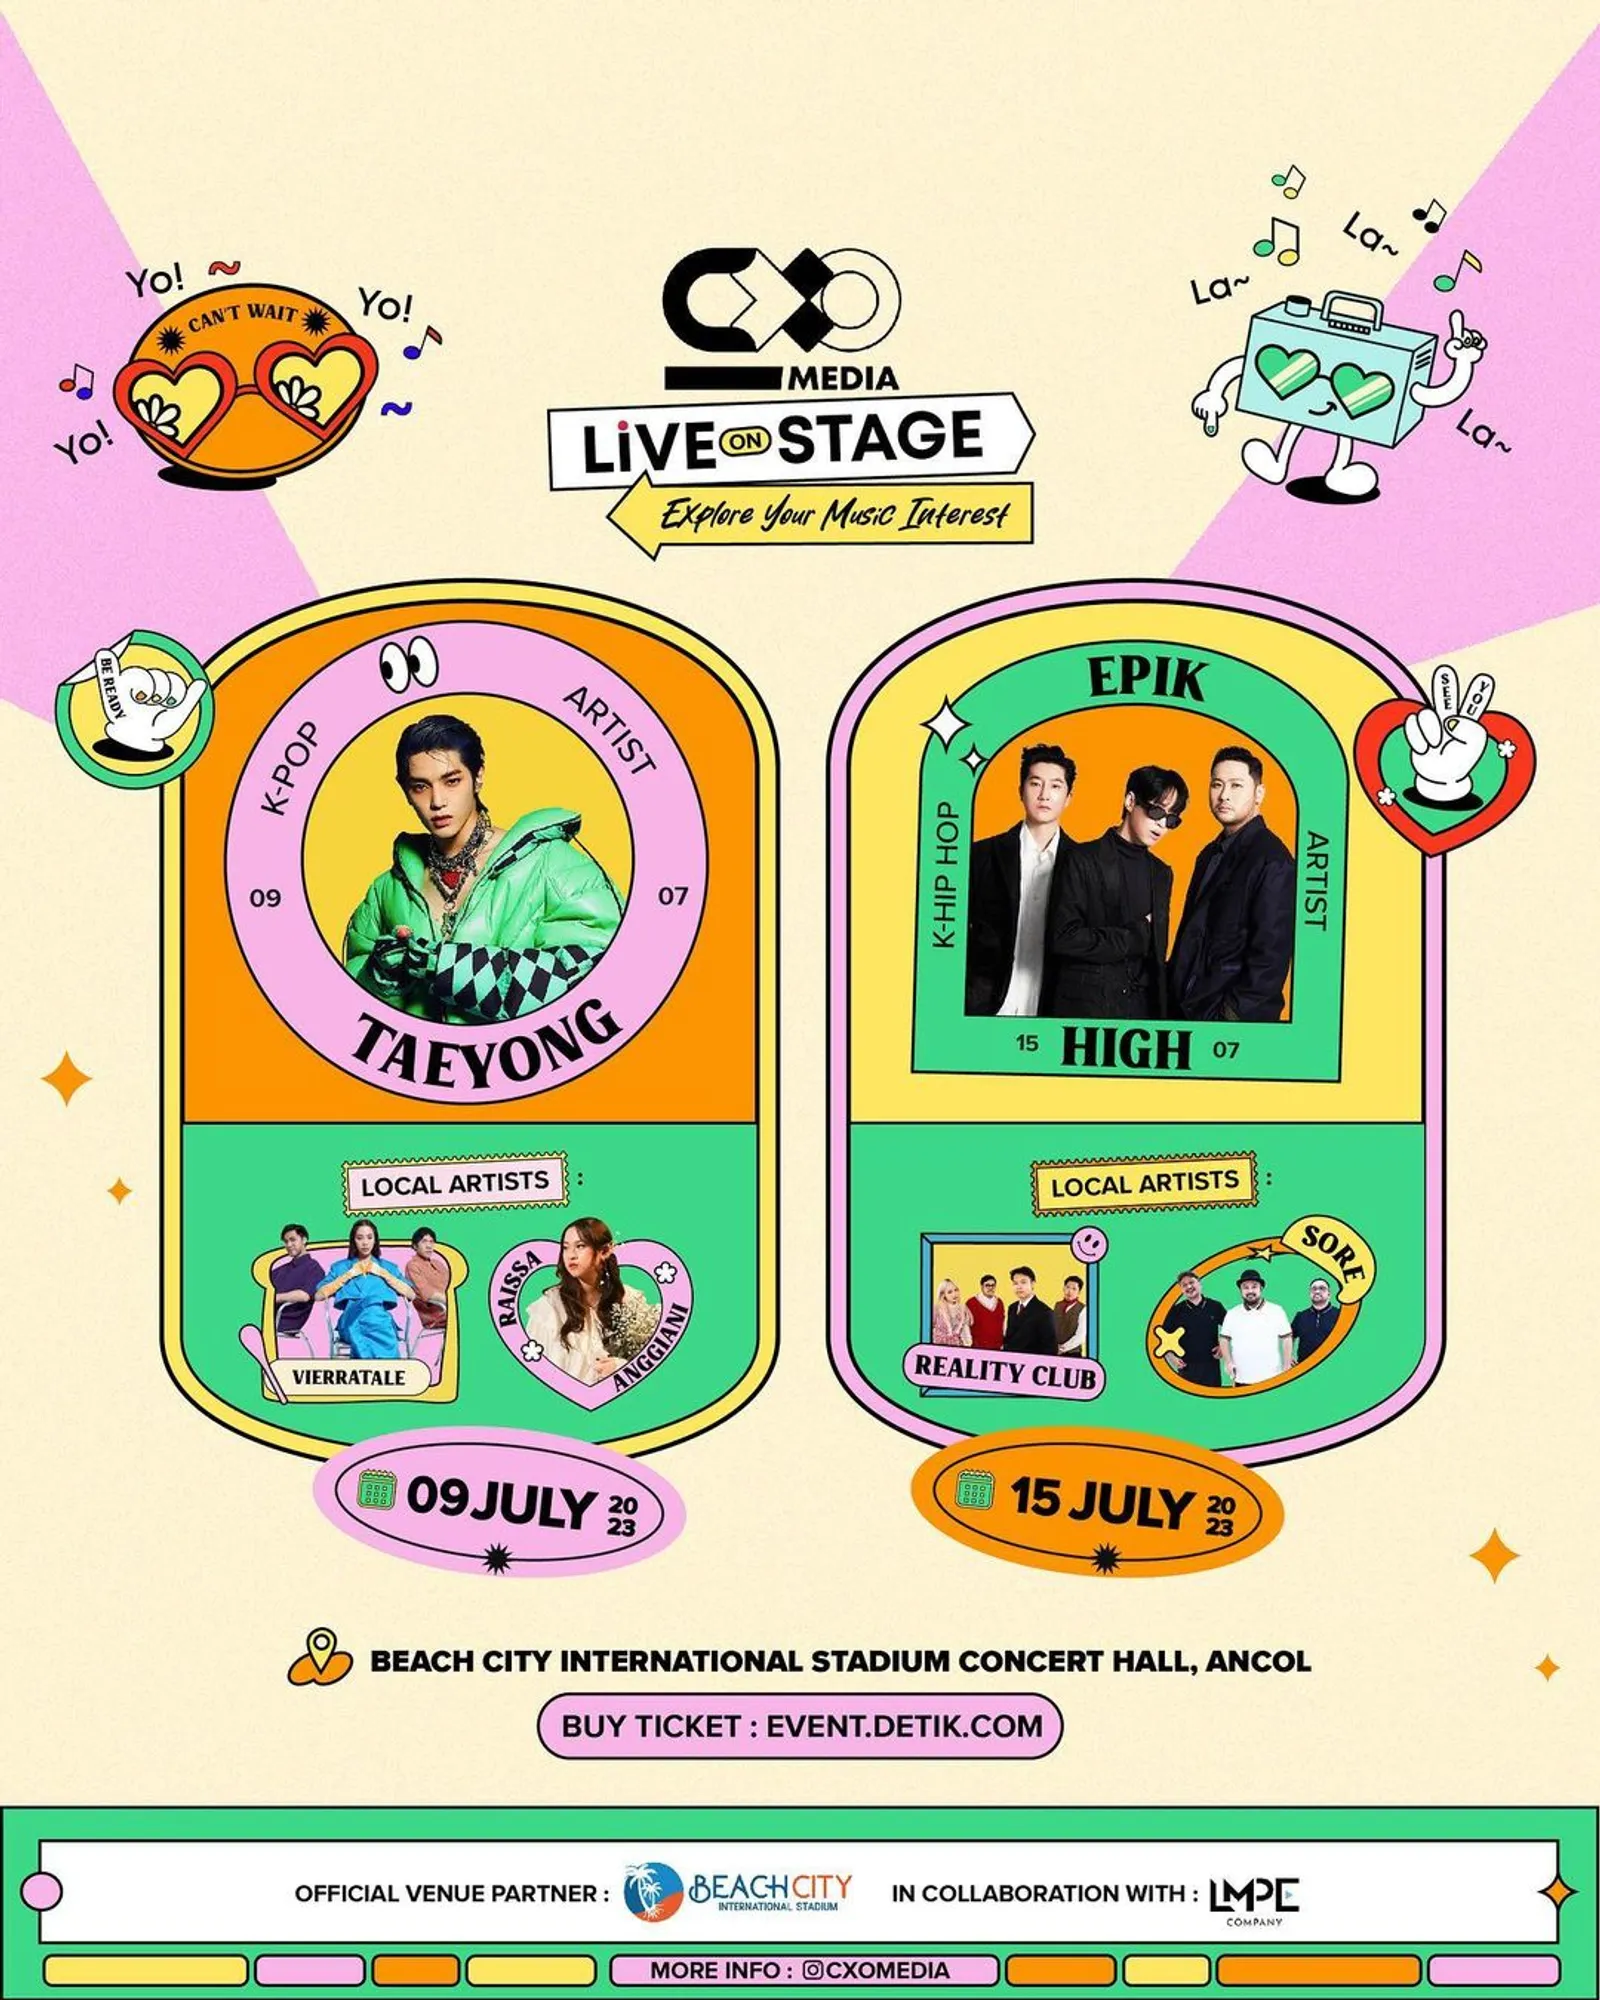 Cara War Tiket CXO Media Live on Stage buat Nonton Epik High & Taeyong